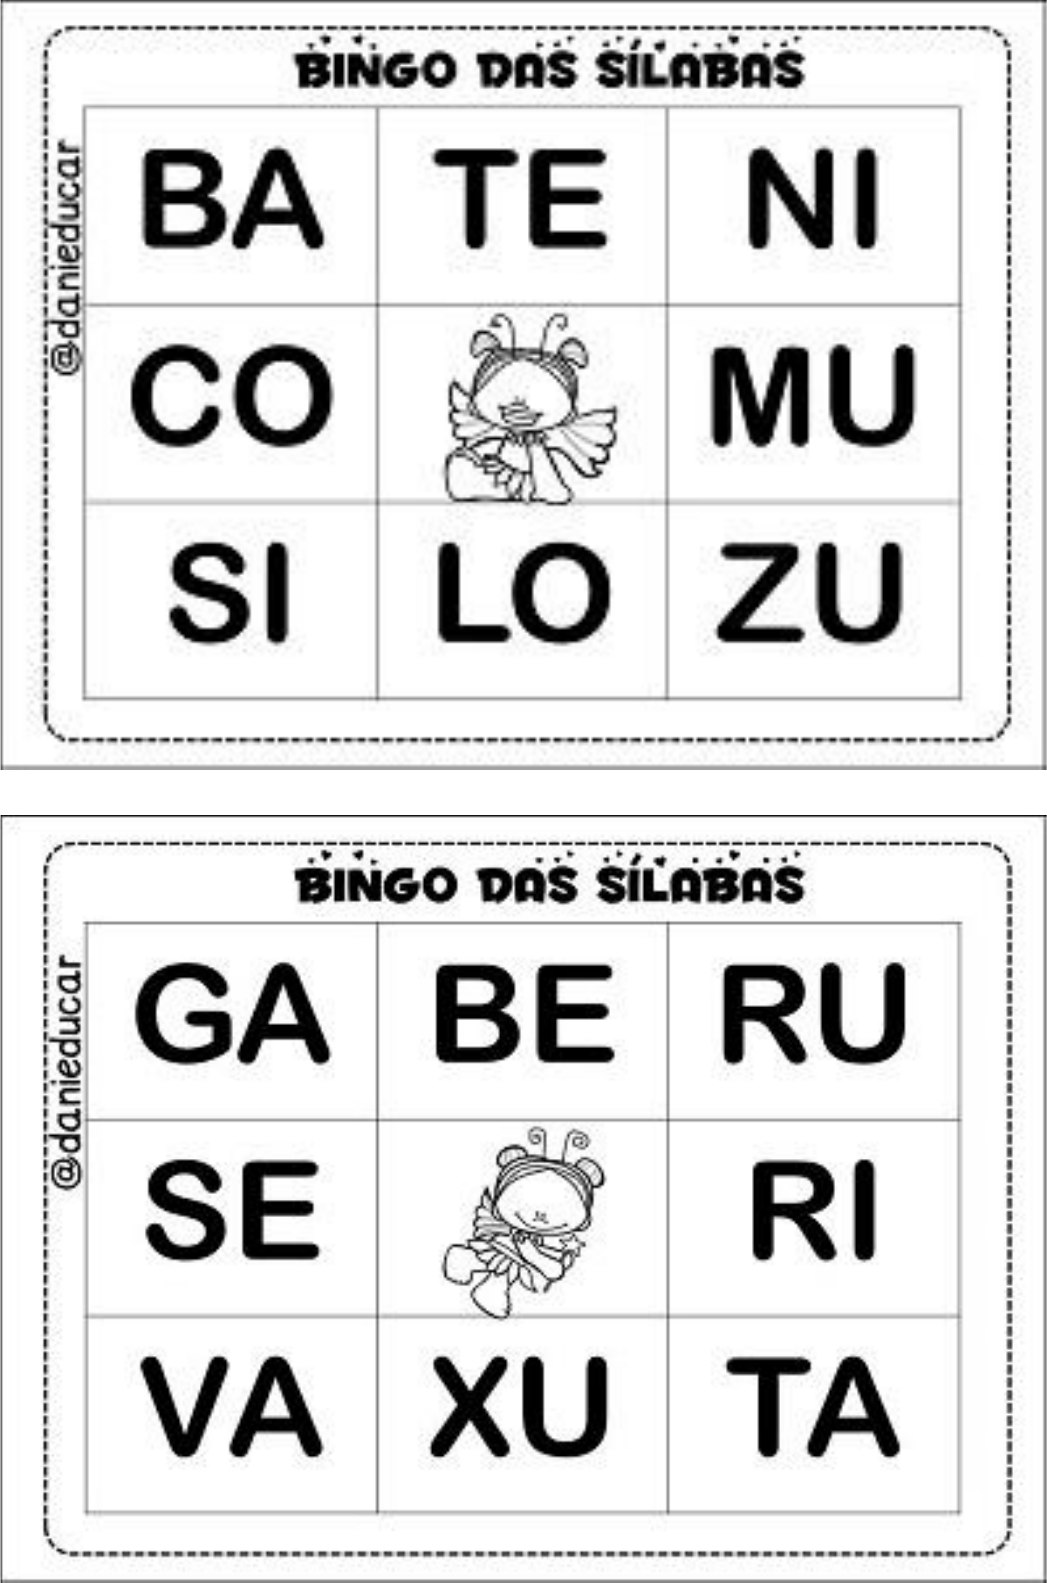 Bingo das sílabas Pedagogia